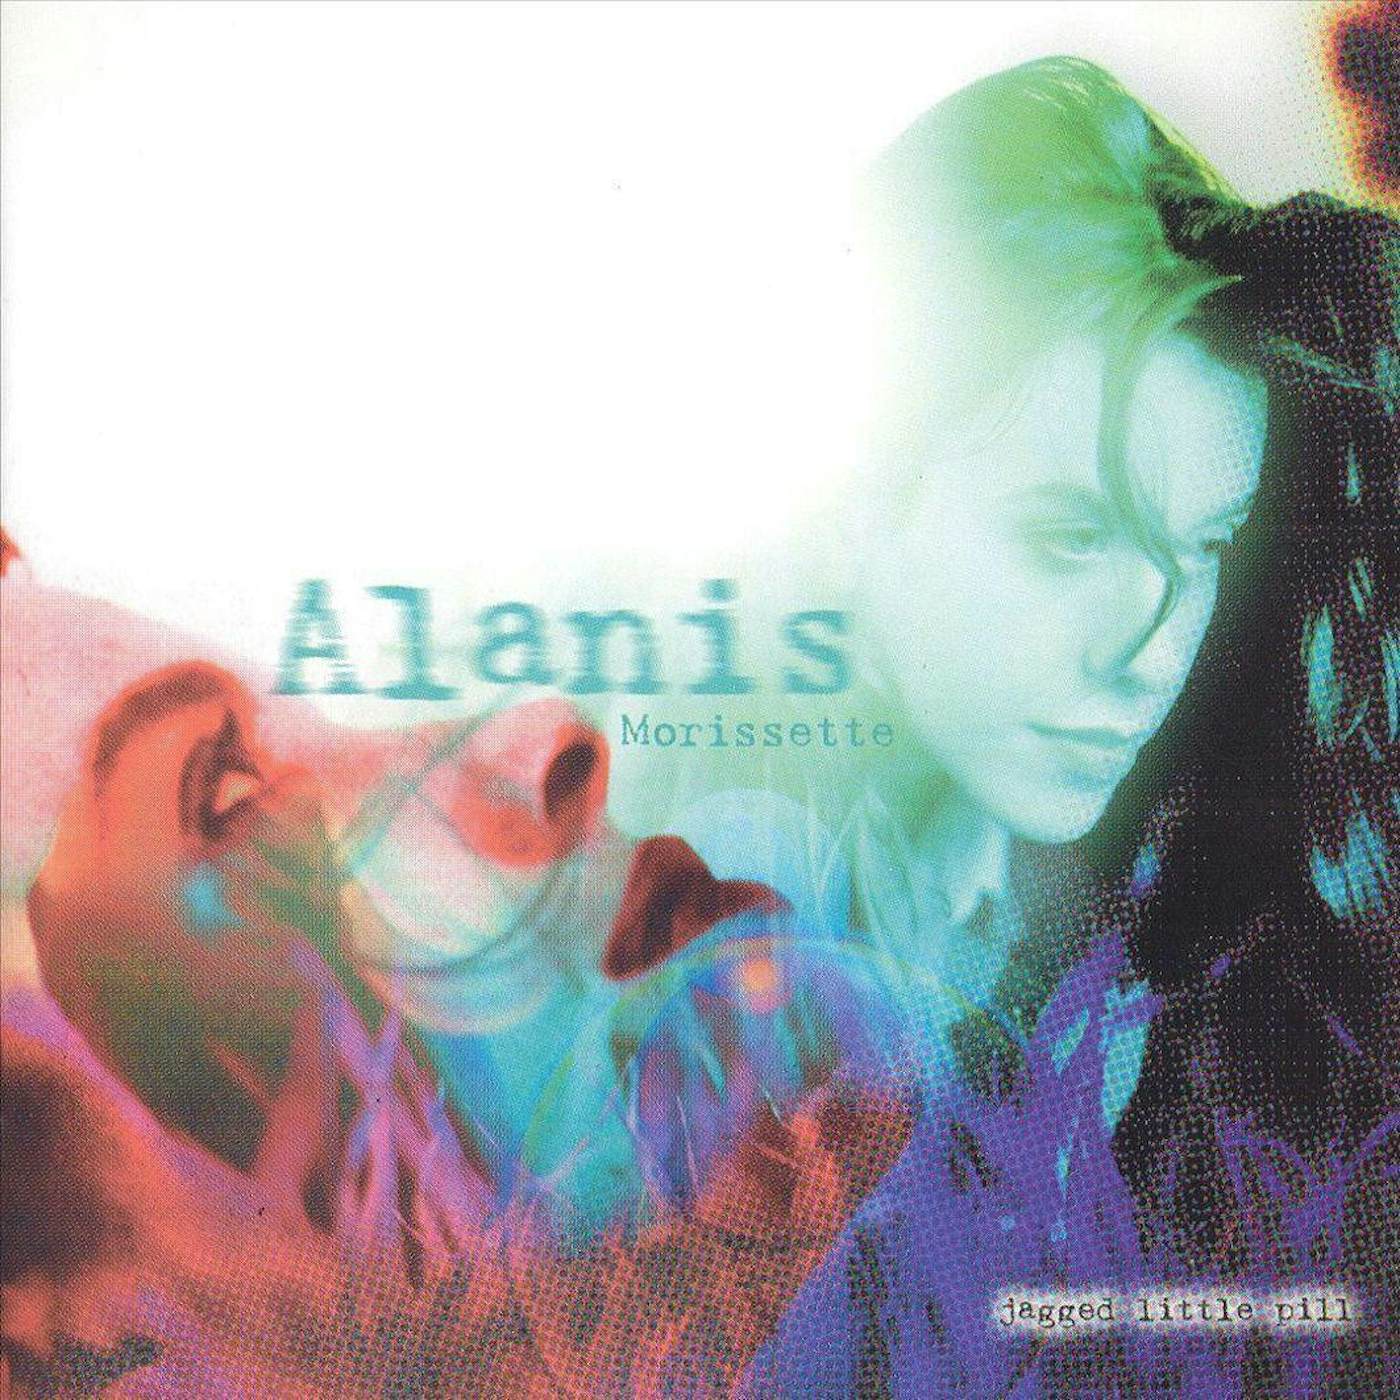 Alanis Morissette Jagged Little Pill (180g) Vinyl Record